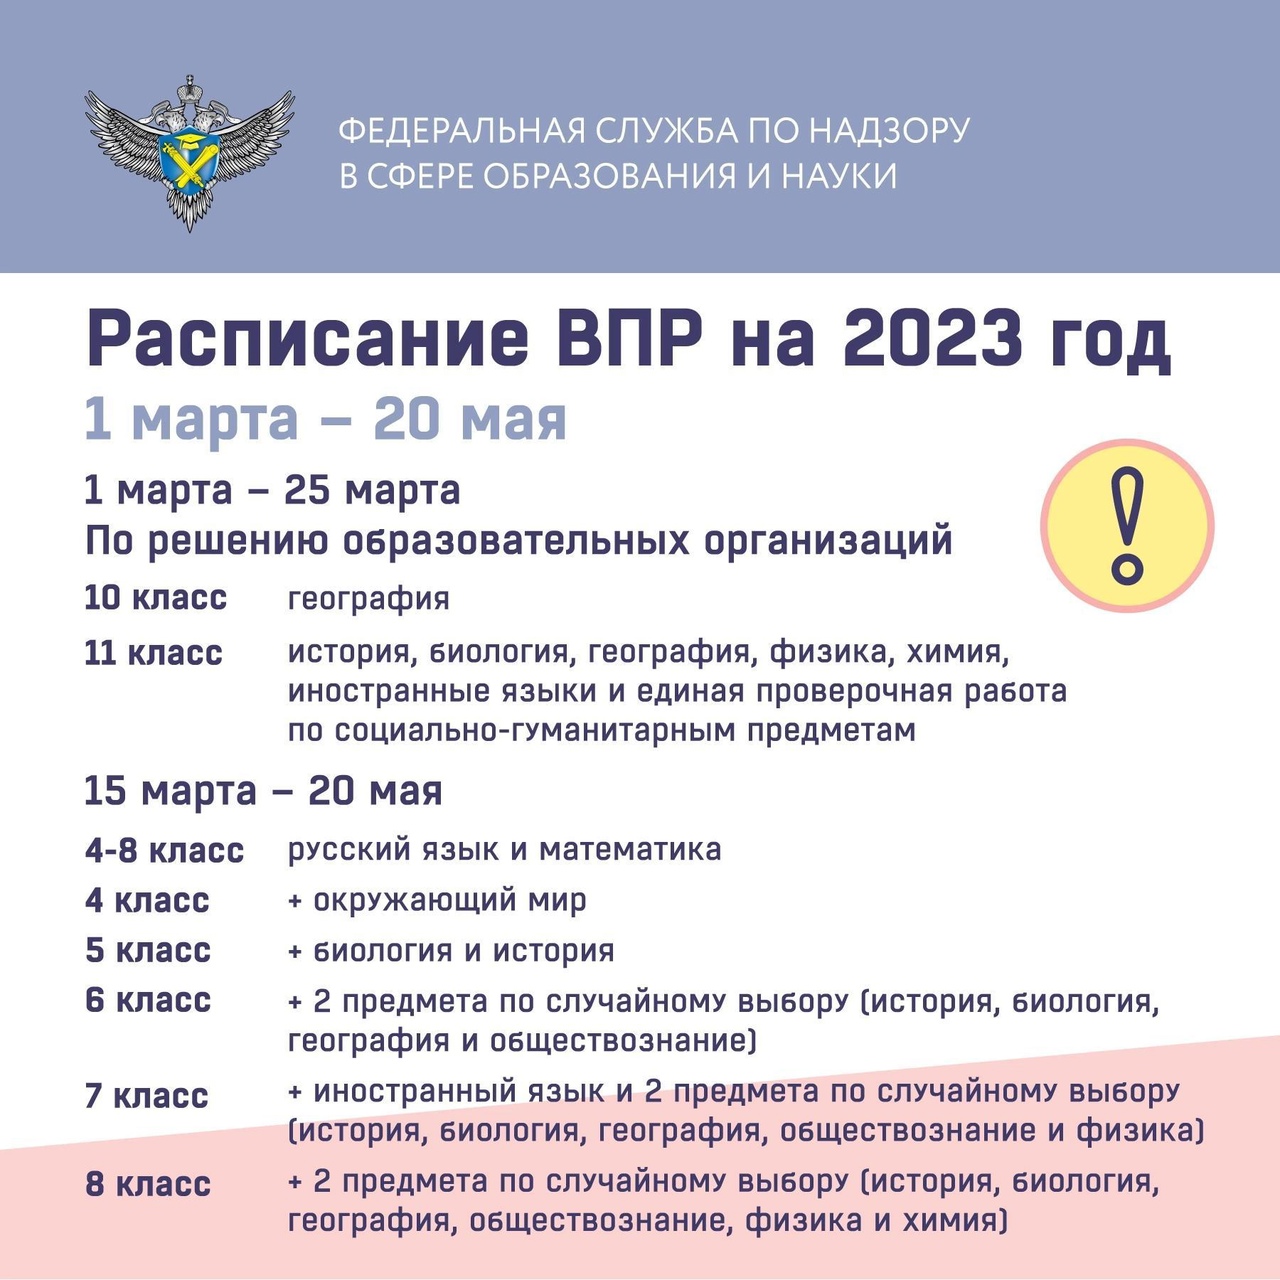 Рособрнадзор утвердил расписание ВПР на 2023 год